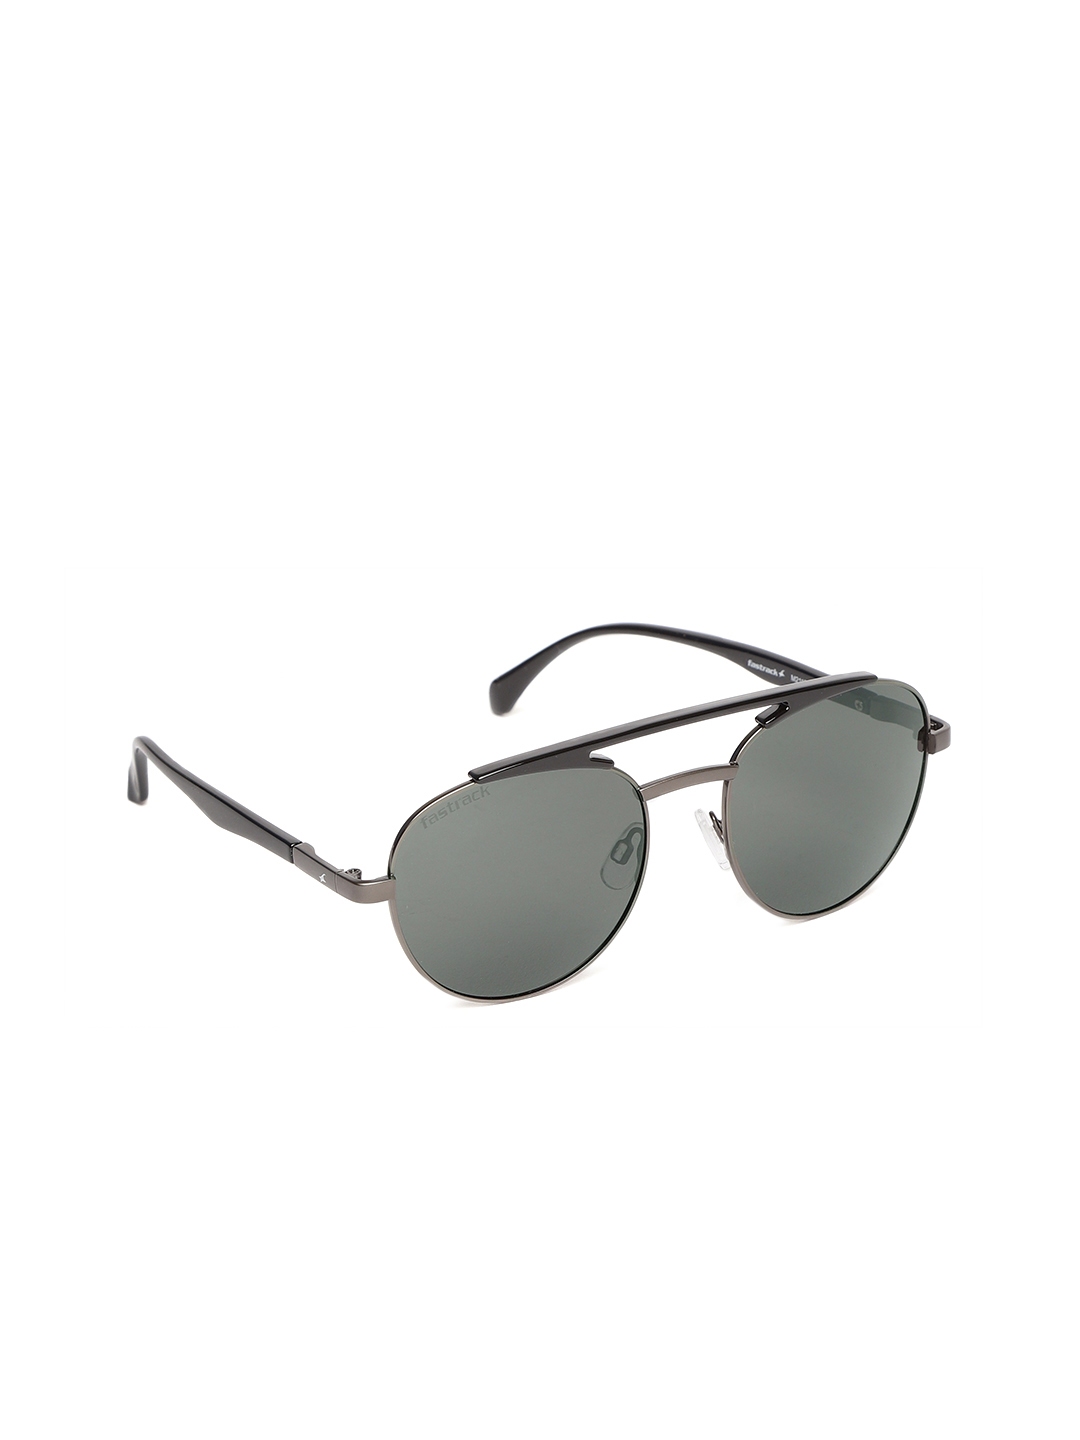 Buy Fastrack Men Oval Sunglasses M211BK3P - Sunglasses for Men